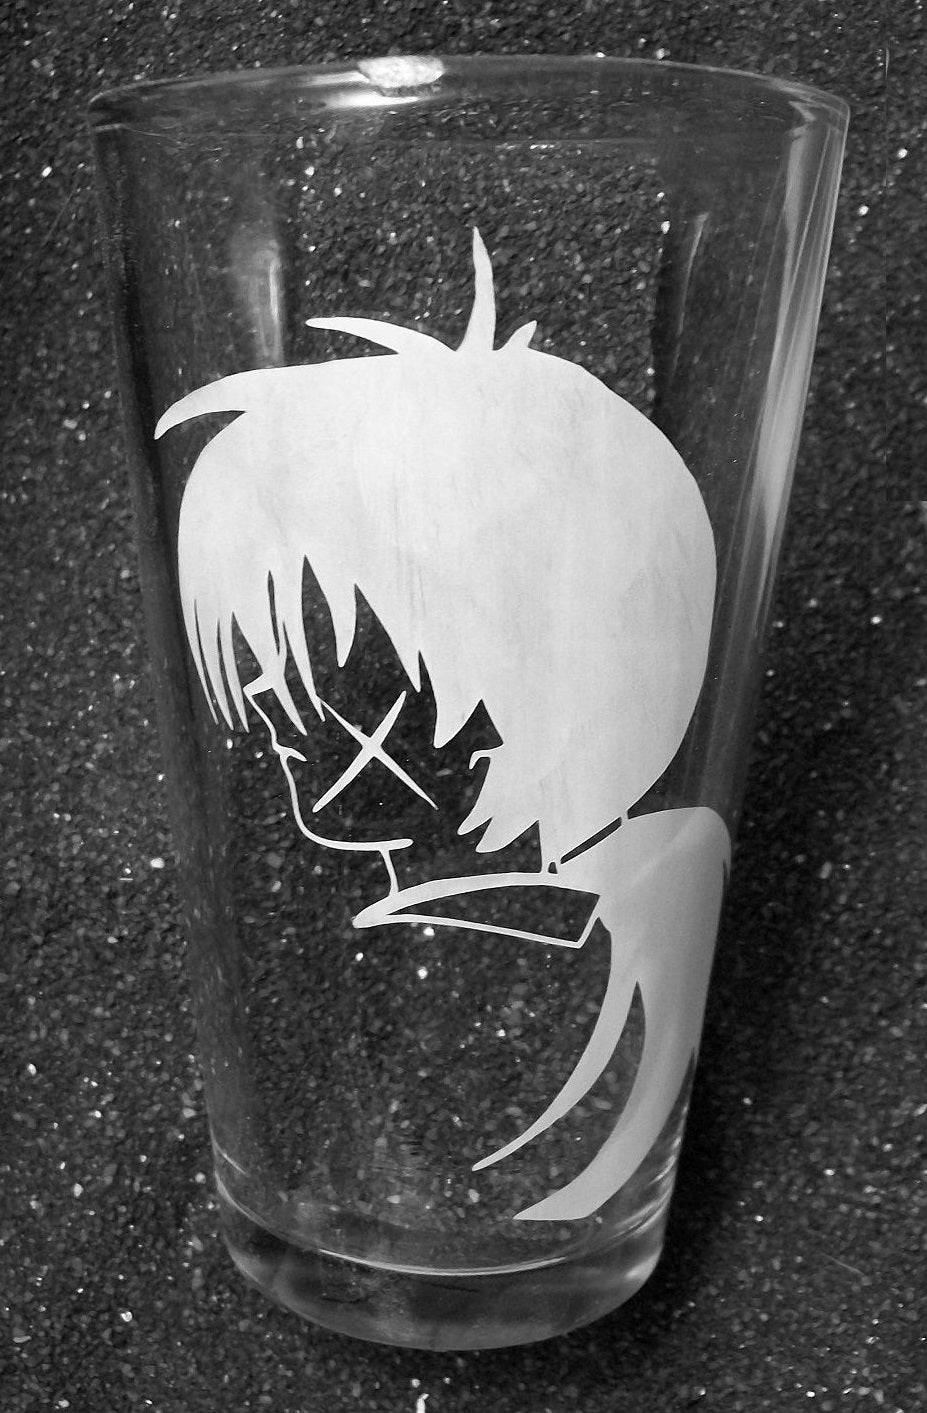 Ruroni Kenshin fanart samurai etched pint glass beer cup tumbler